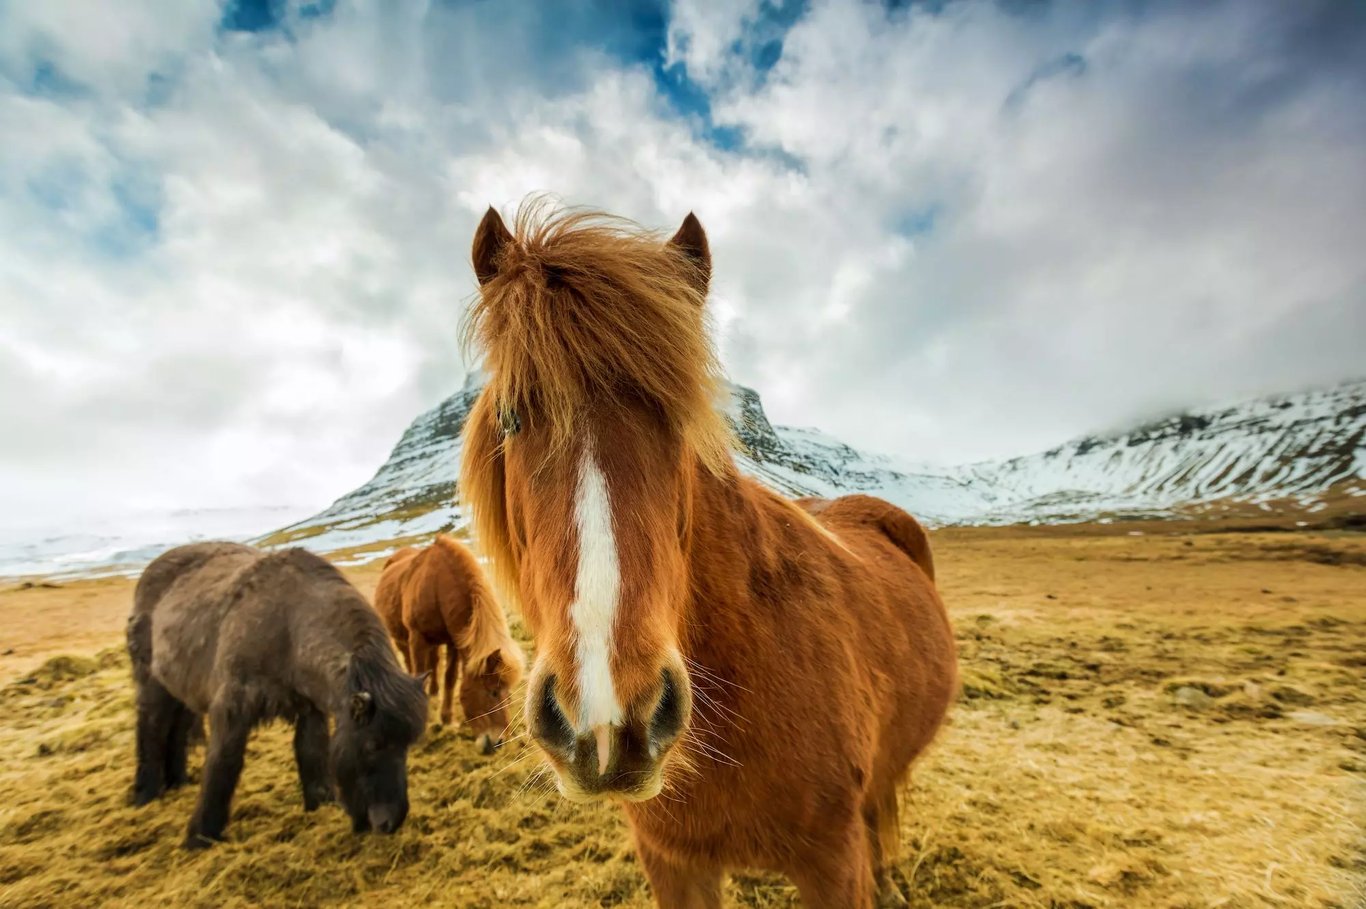 Izland - Top 10 izlandi állat, amit nem hagyhatsz ki!